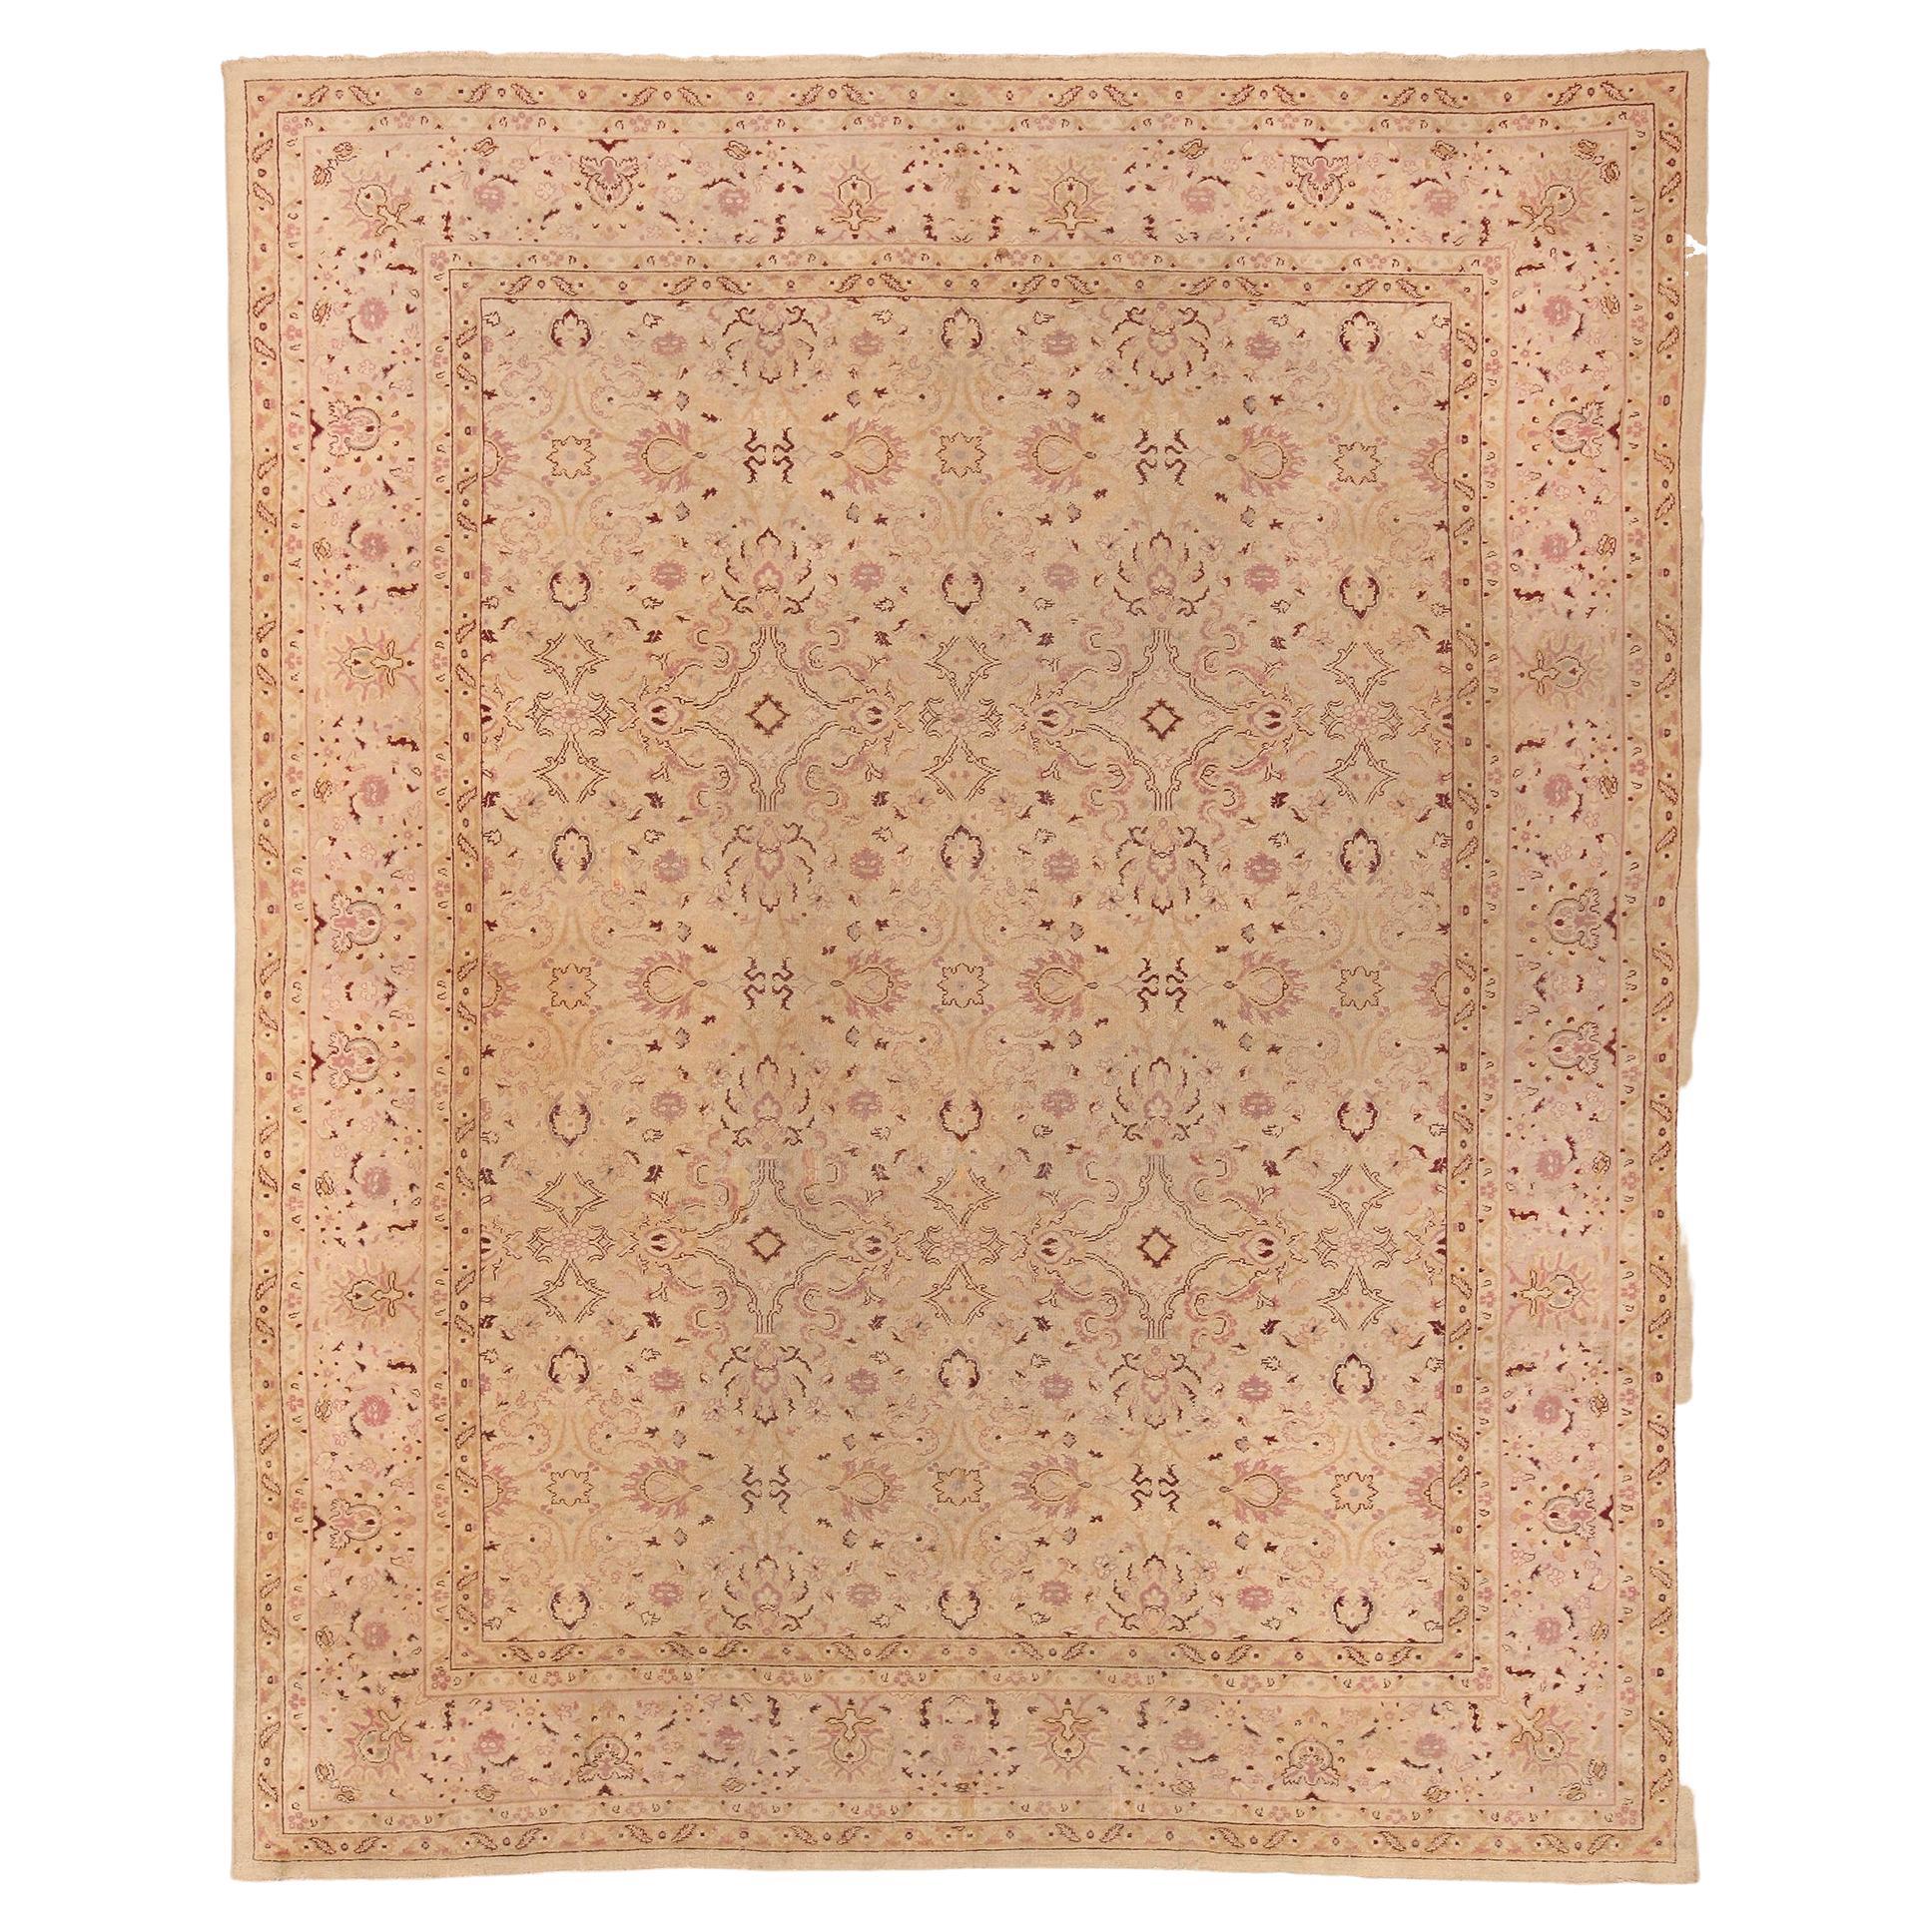 Antiker indischer Amritsar-Teppich. Größe: 11 Ft x 14 Ft